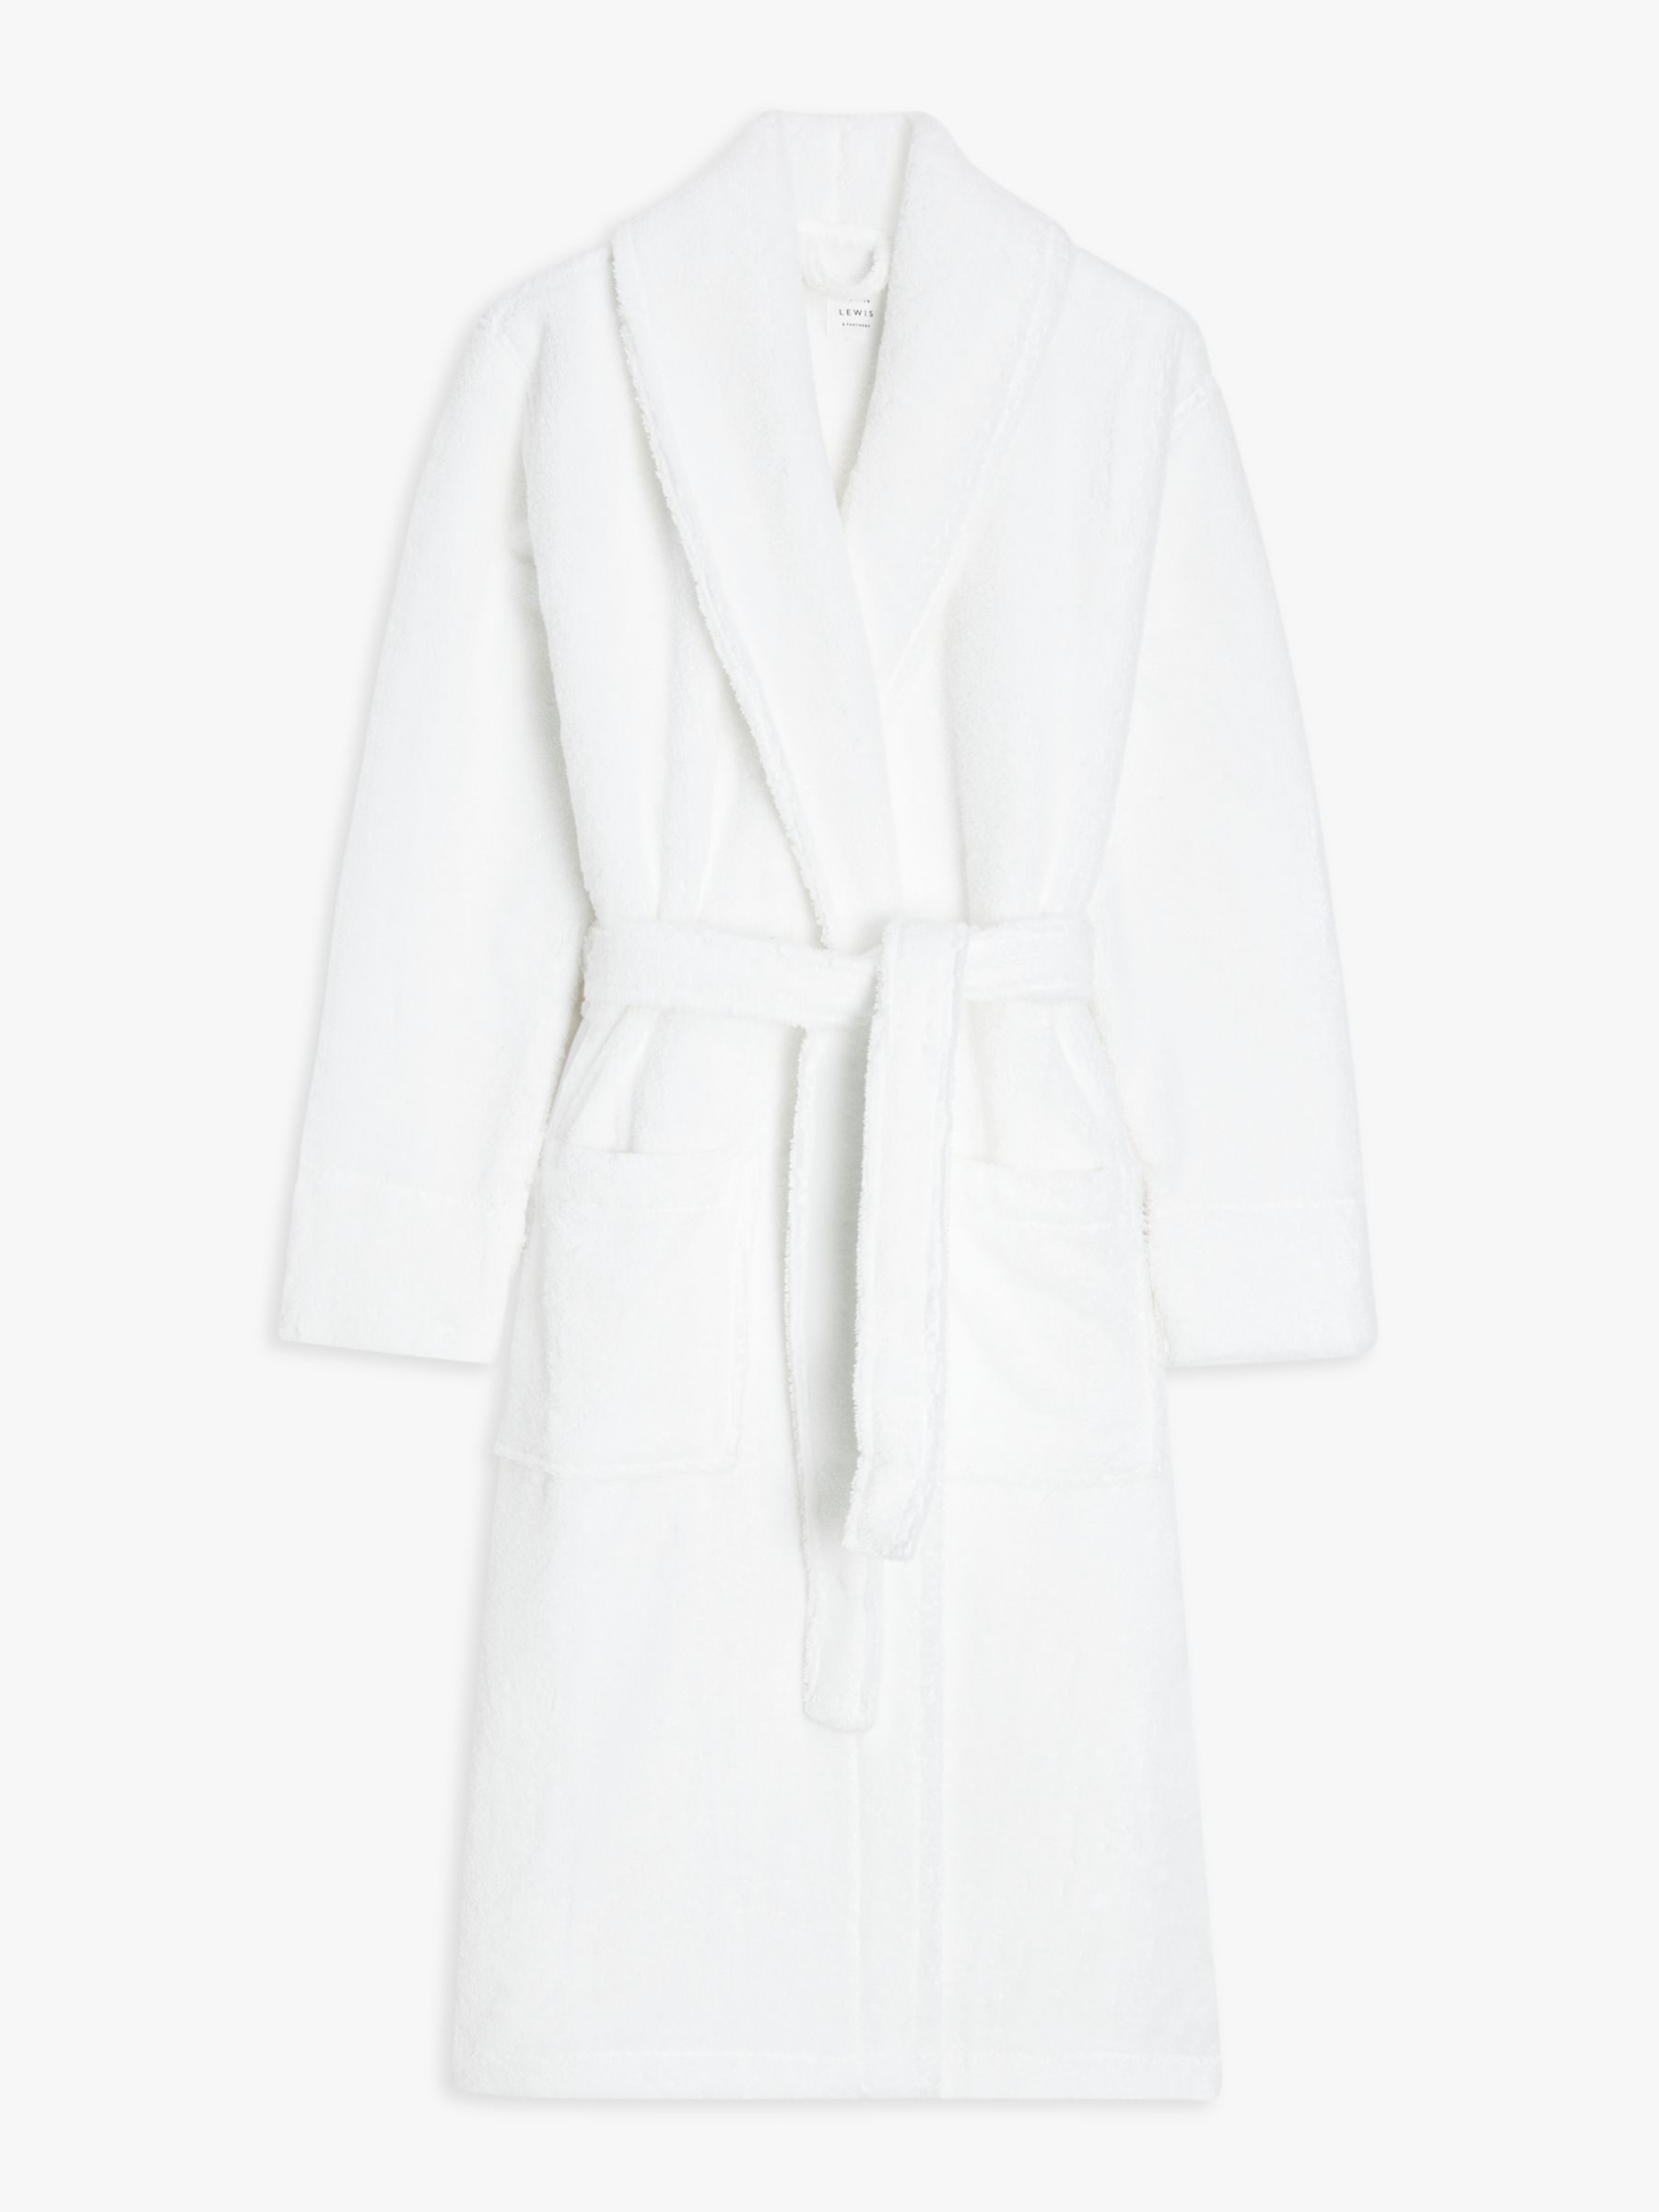 Buy John Lewis Luxury Towelling Robe Online at johnlewis.com